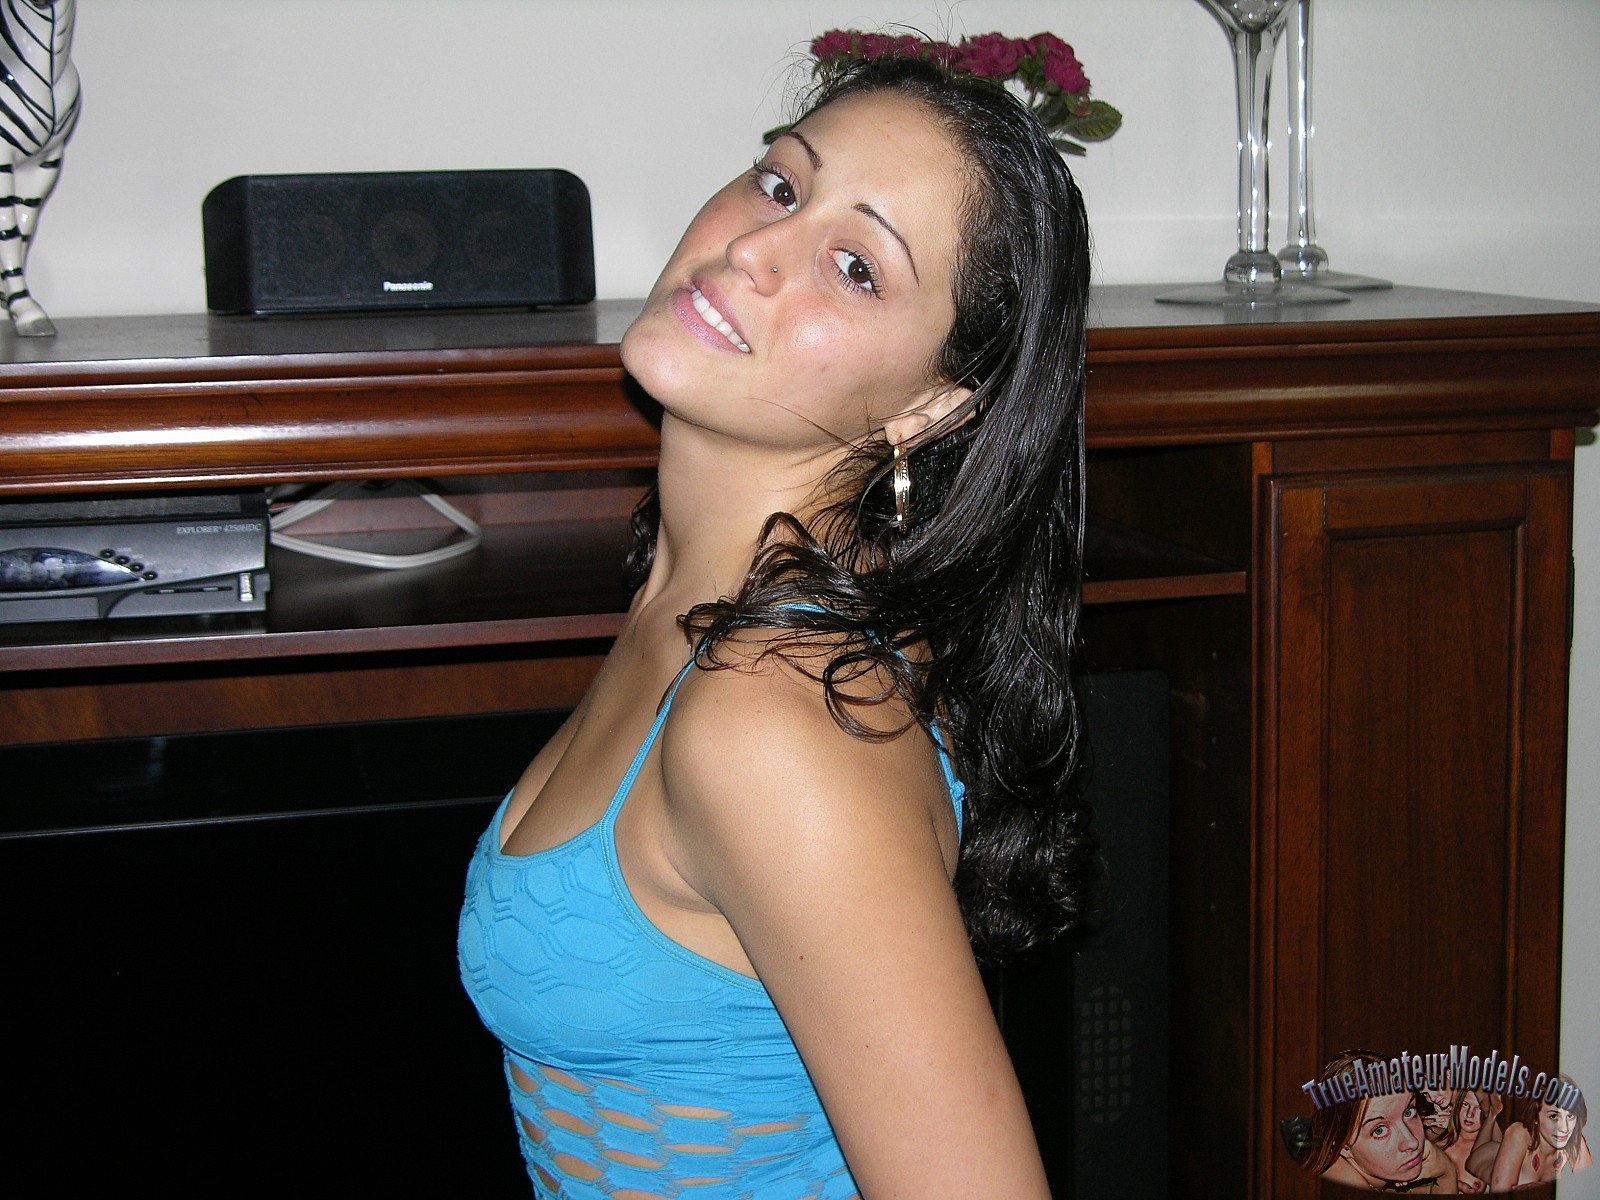 1600px x 1200px - Nude Hispanic Amateur Girl - Melina